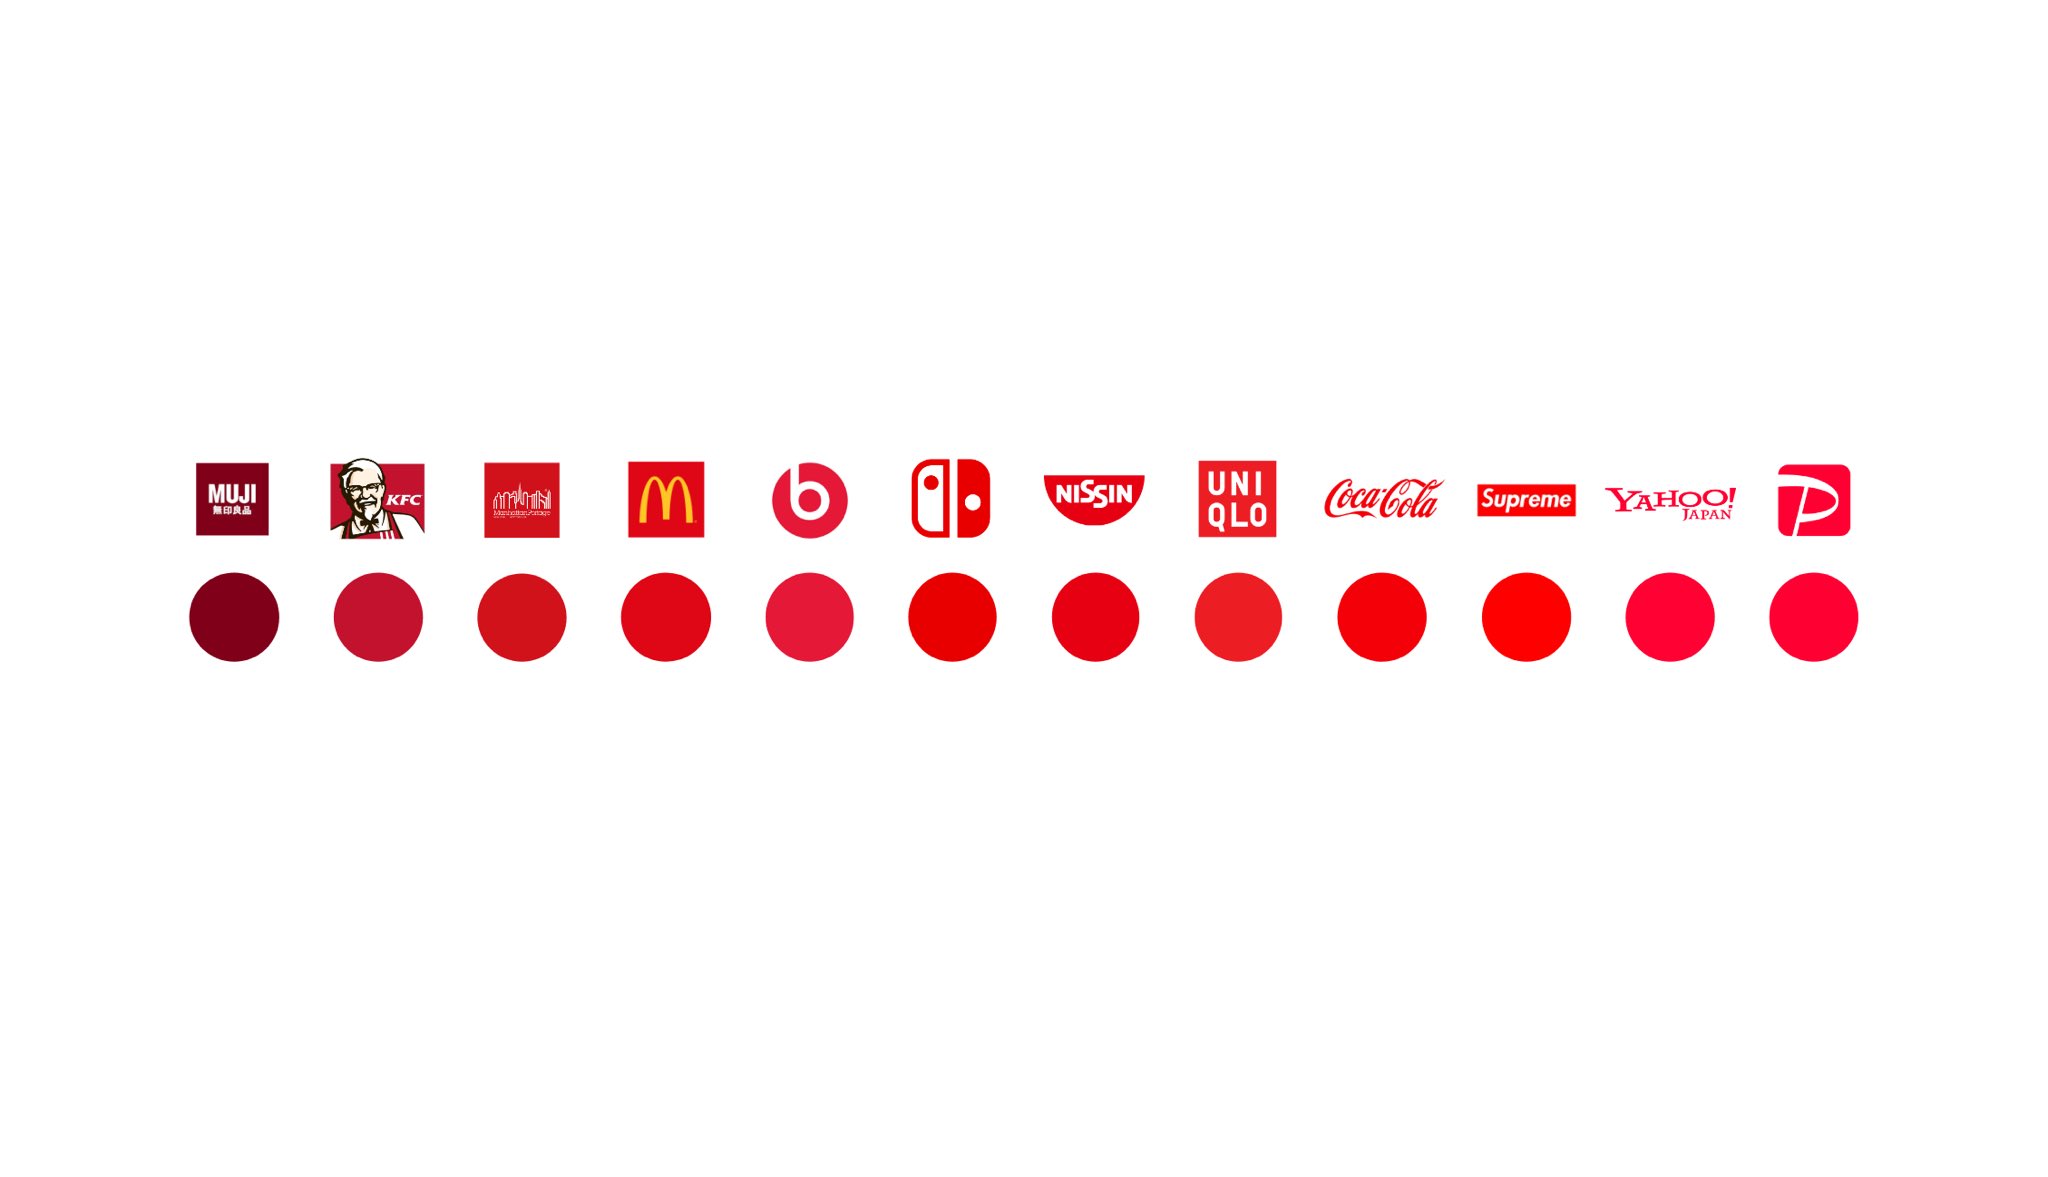 つだしん 企業ロゴの色の一覧表 T Co Rcat0ozop7 Twitter